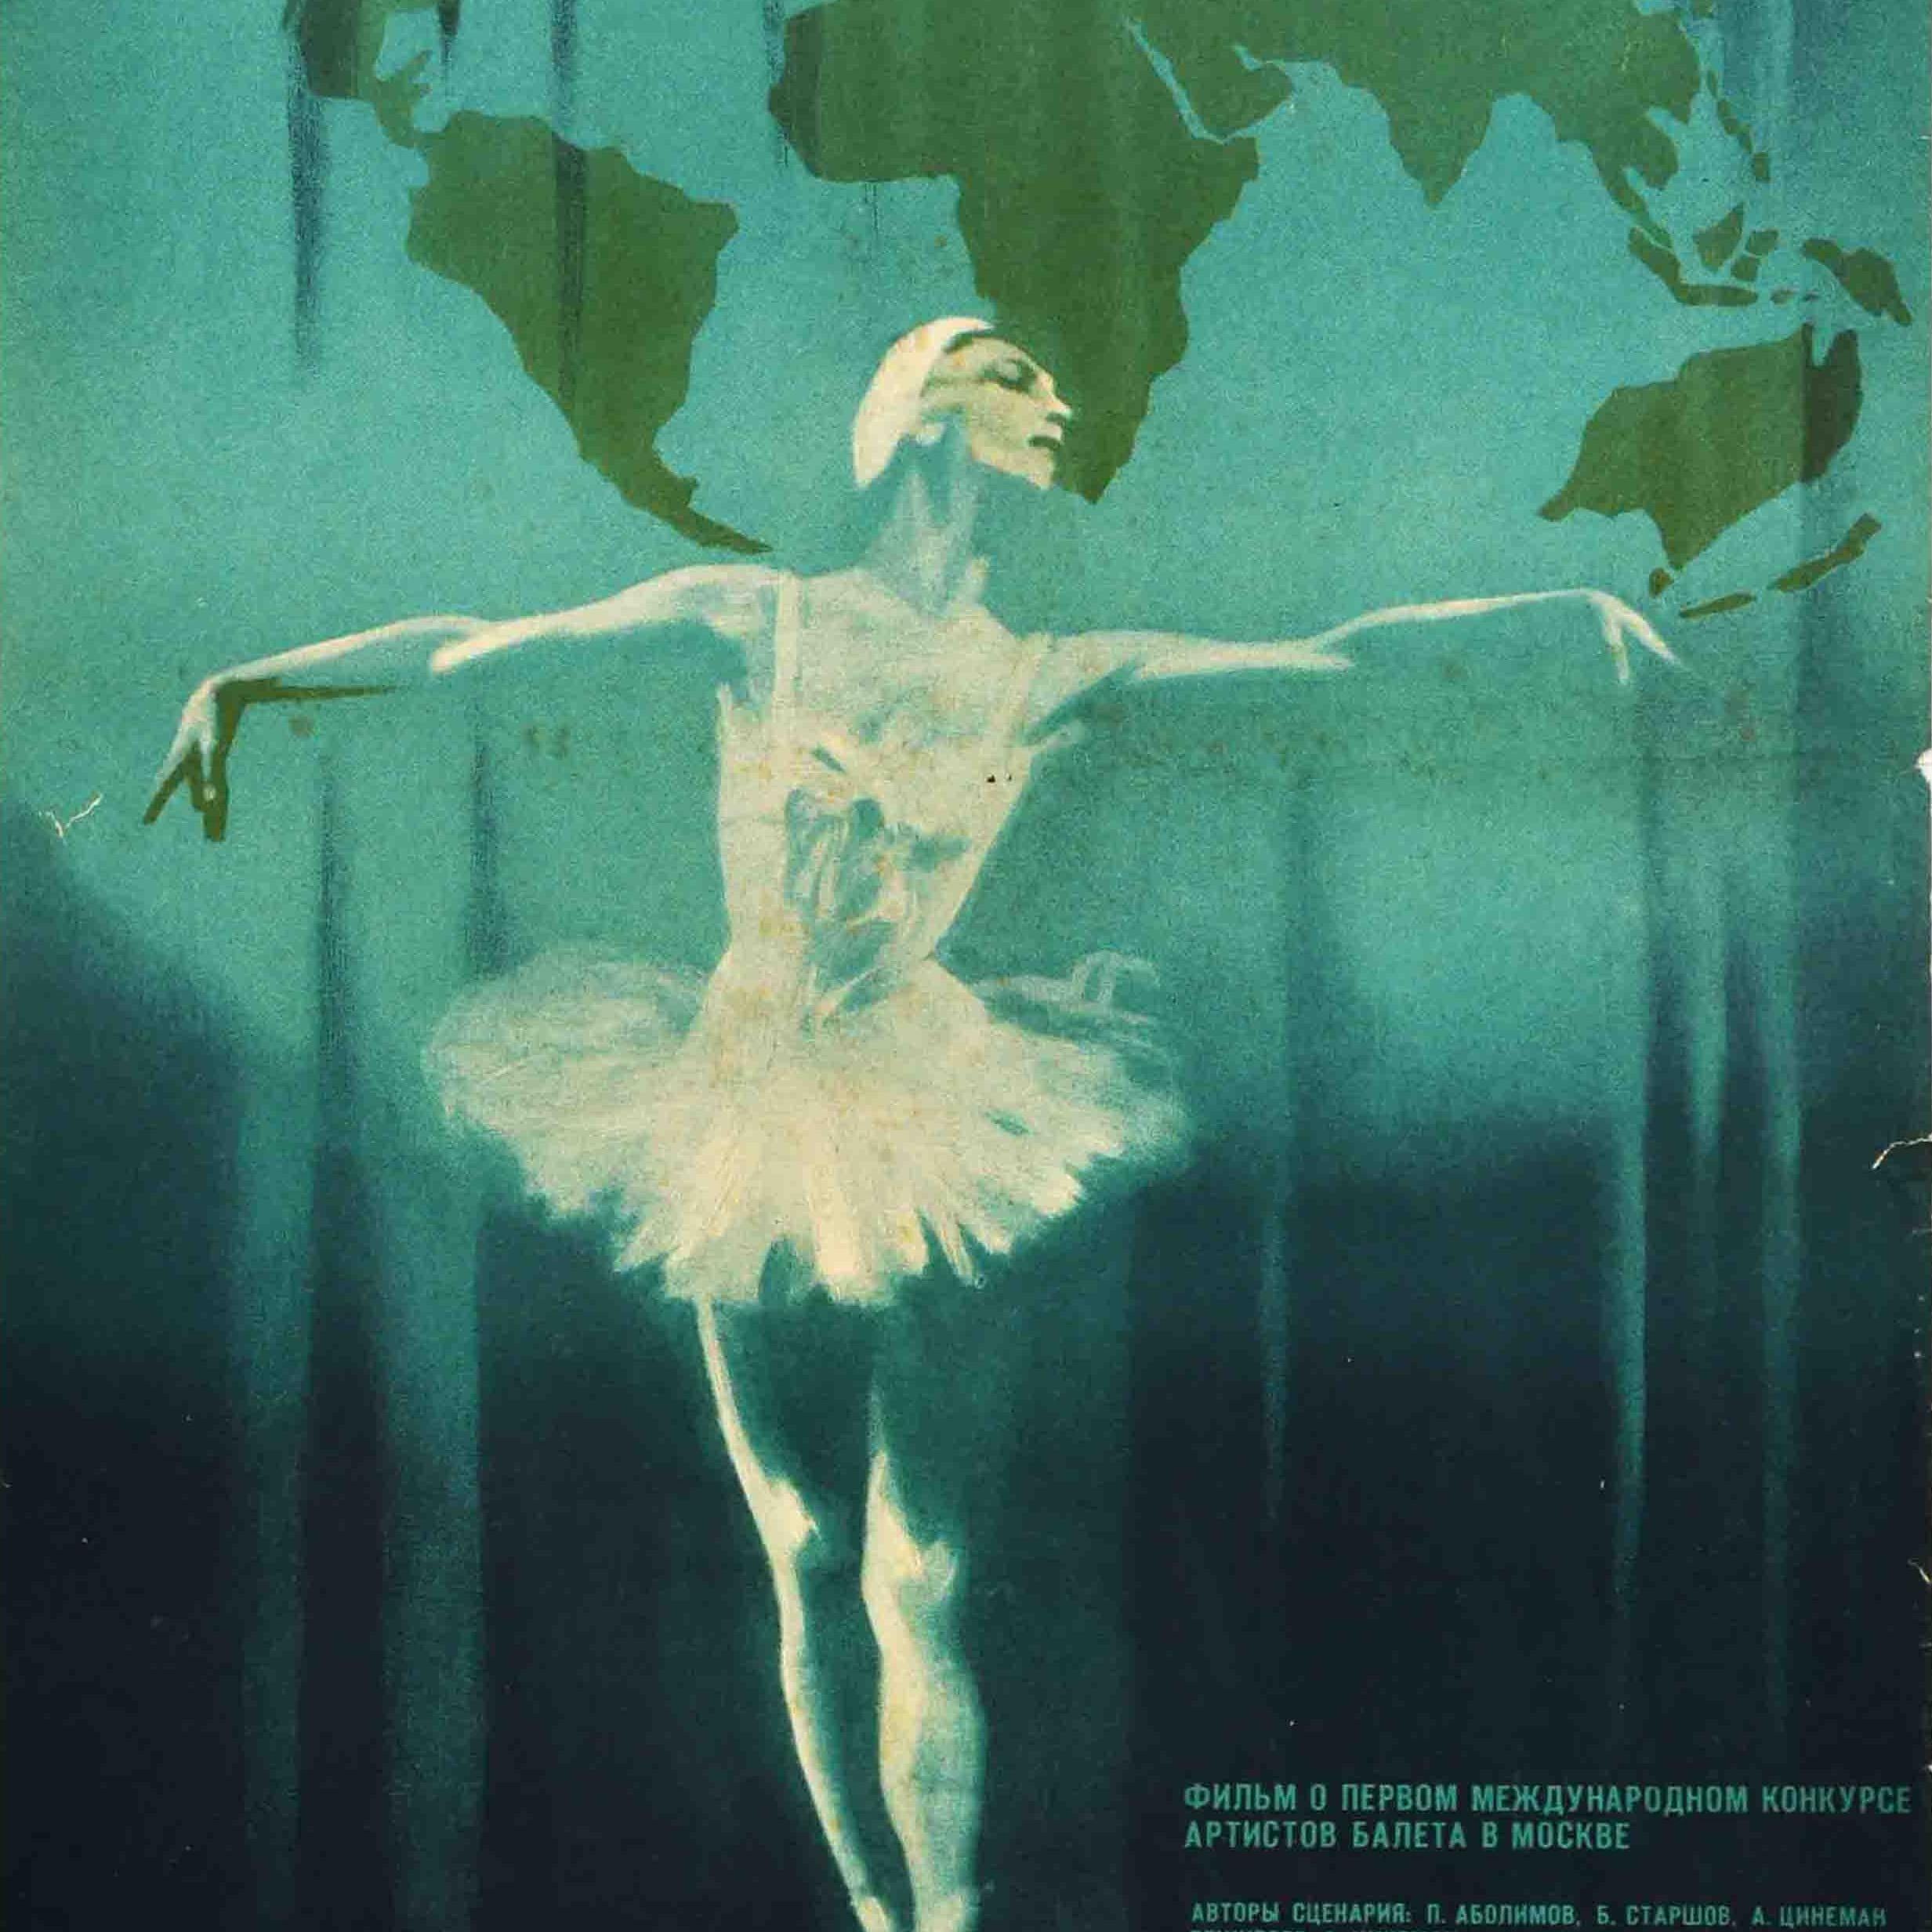 Affiche originale de film soviétique vintage pour un reportage sur le premier concours international de ballet pour jeunes danseurs de ballet qui s'est tenu à Moscou - Молодой балет мира / Young World Ballet - montrant une ballerine (peut-être la